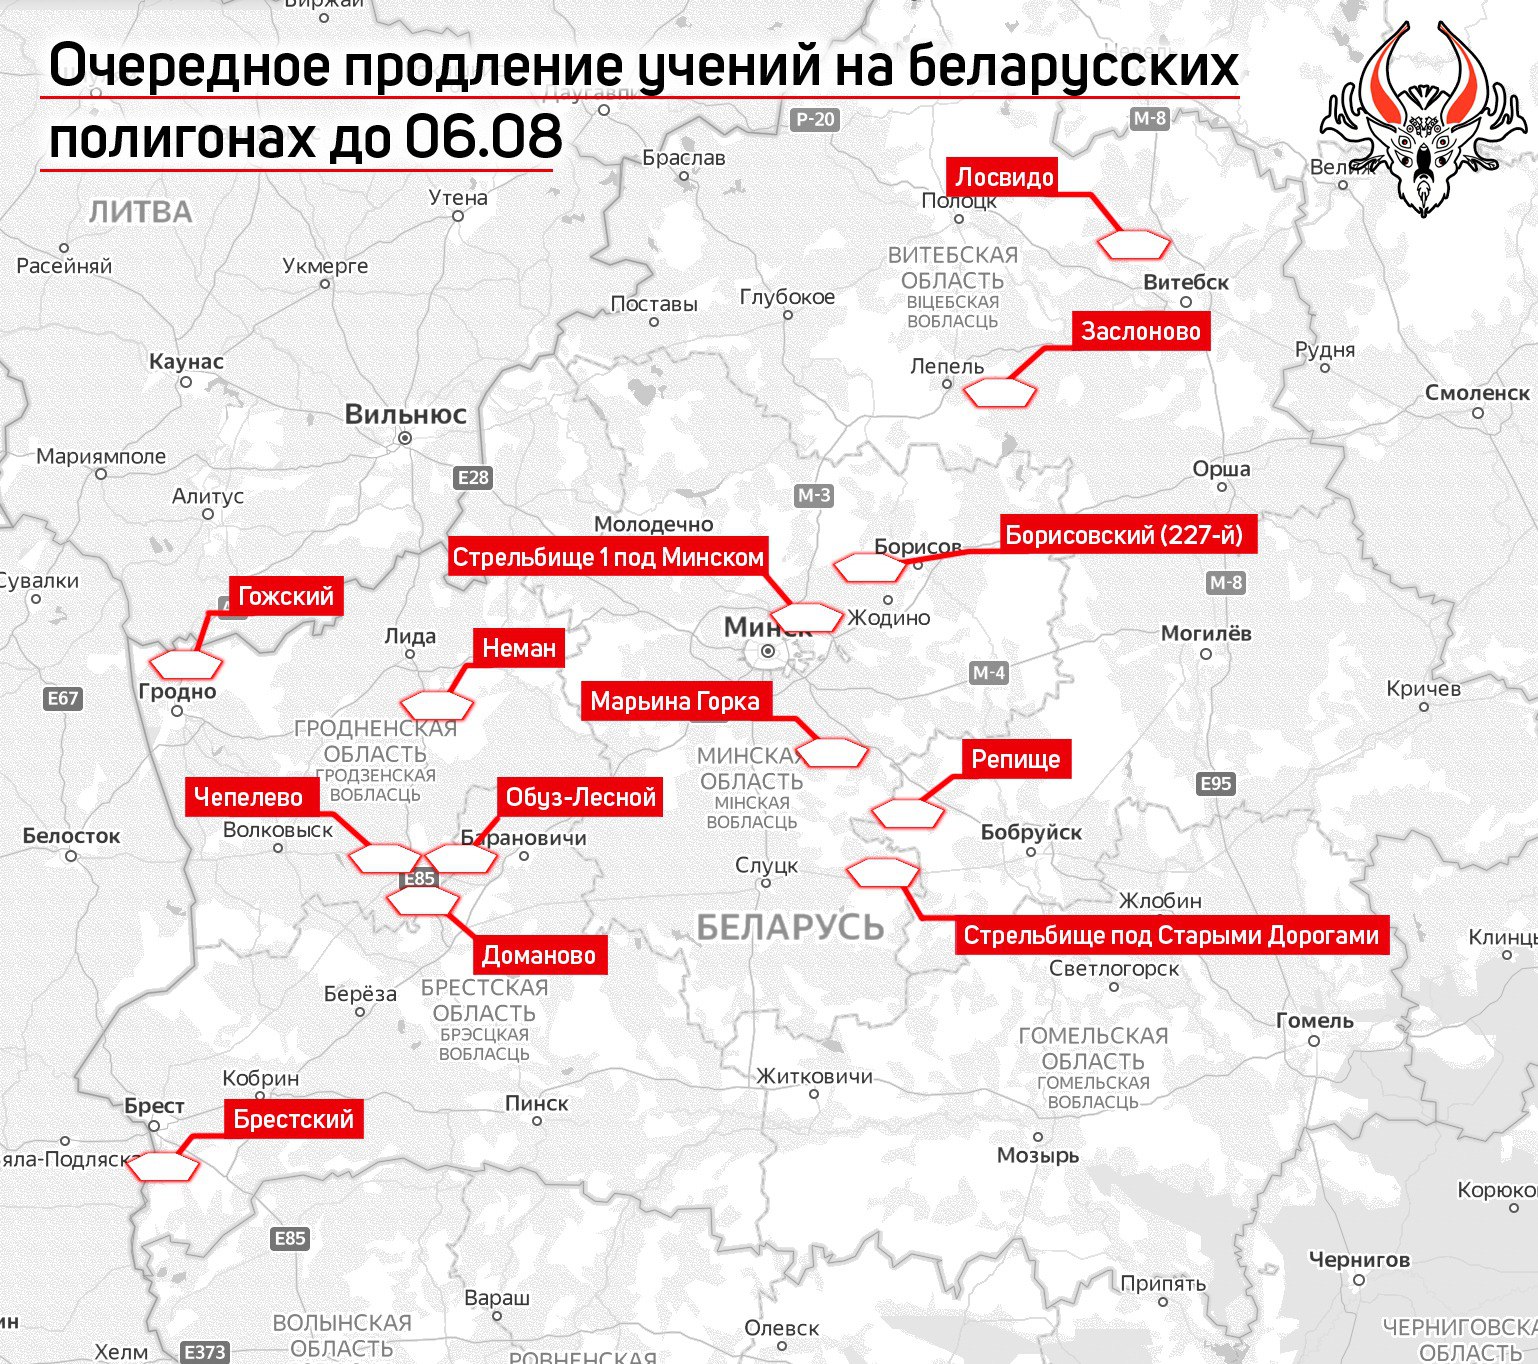 Мапа про ведення військових навчань в Білорусі. Джерело: Беларускі Гаюн